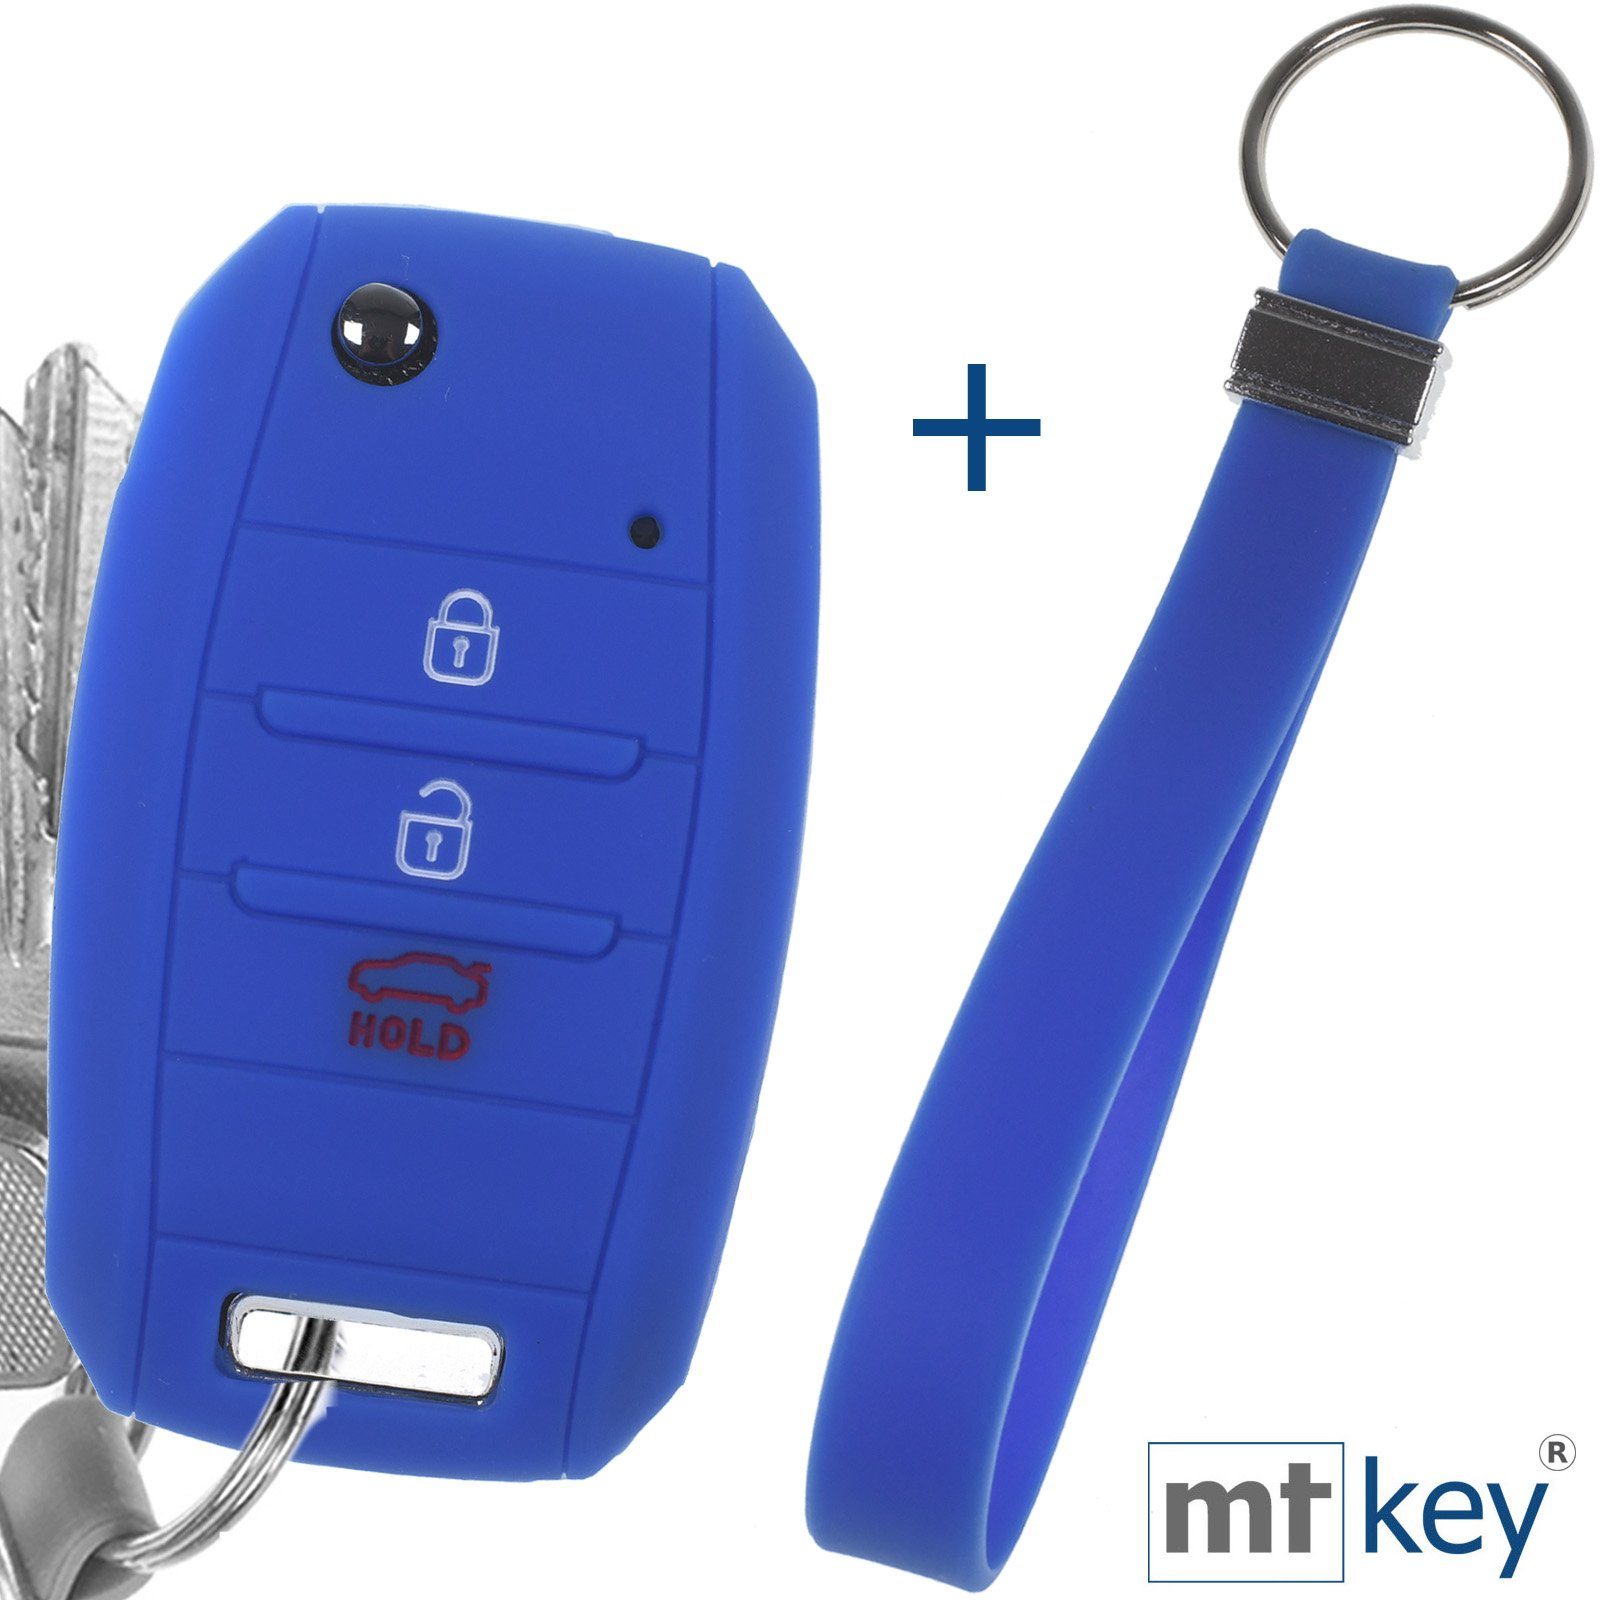 mt-key Schlüsseltasche Autoschlüssel Softcase Silikon Schutzhülle Blau mit Schlüsselband, für KIA Picantio Rio Ceed Soul Sportage Stonic Carens 3 Tasten